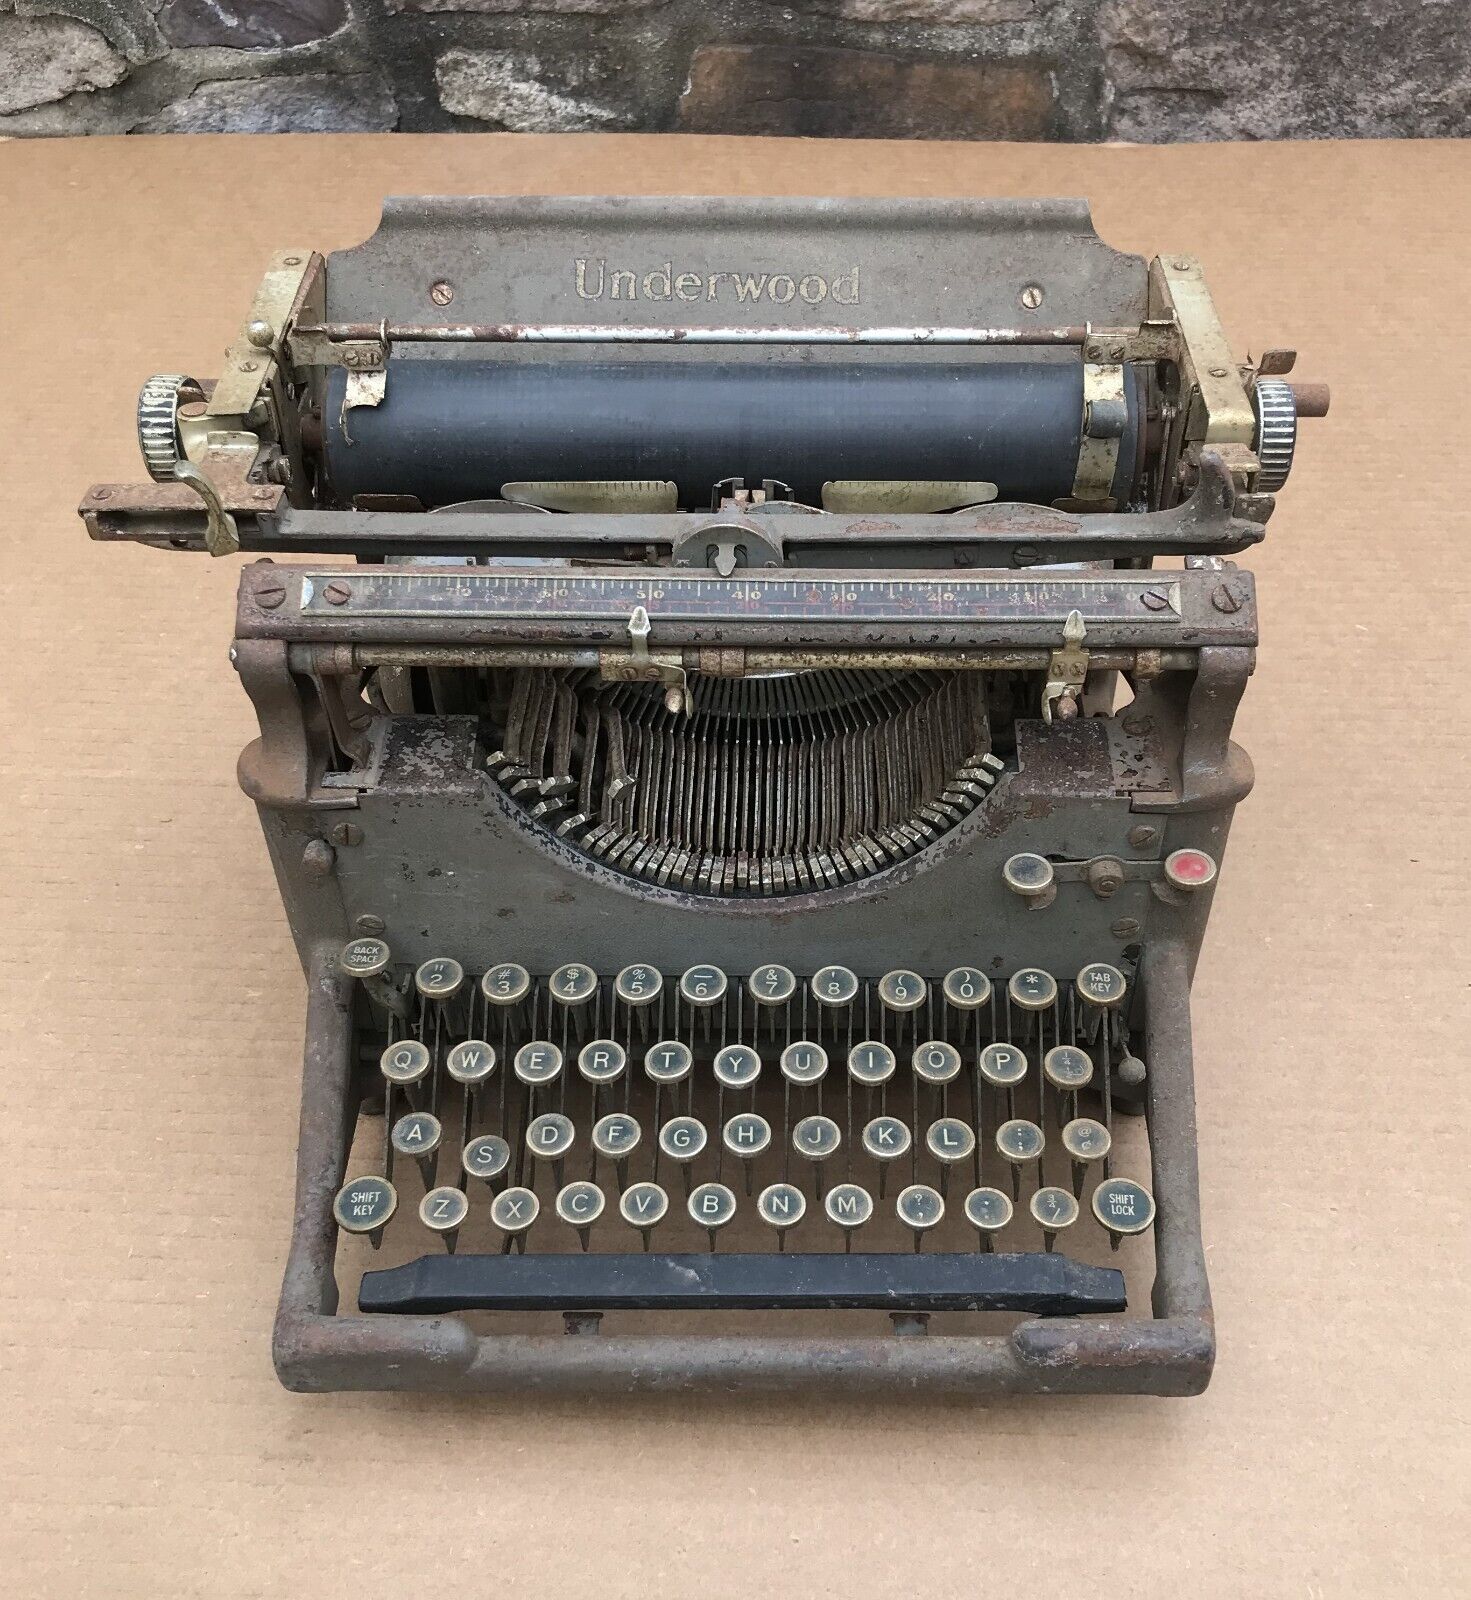 Antique Underwood No. 5 Standard Typewriter 1920's As-found